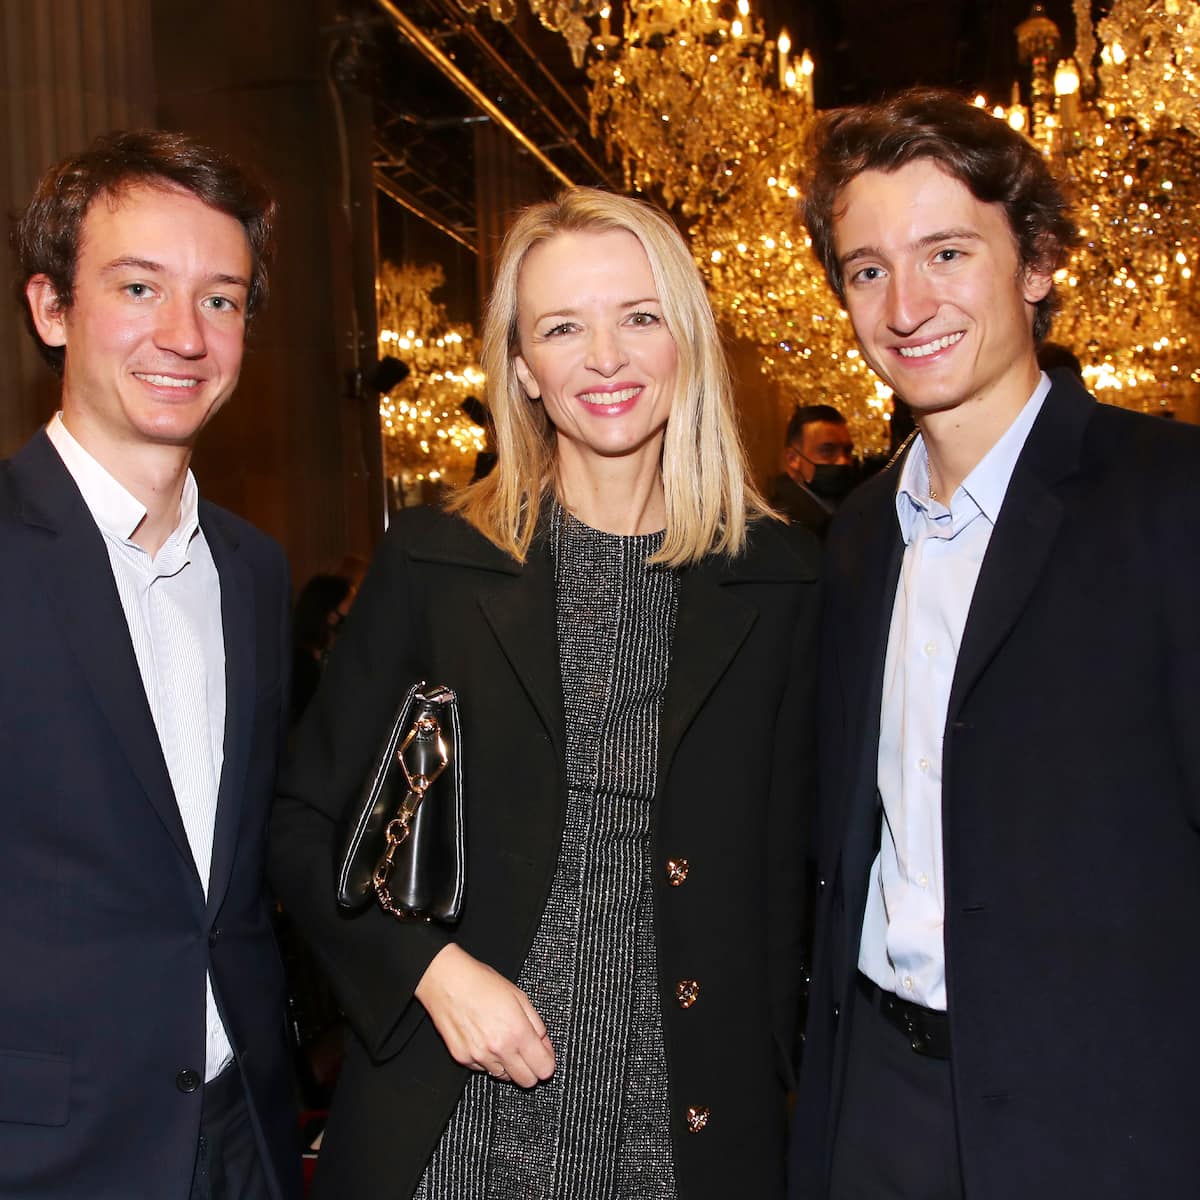 Bernard Arnaults jüngster Sohn nun bei Louis Vuitton